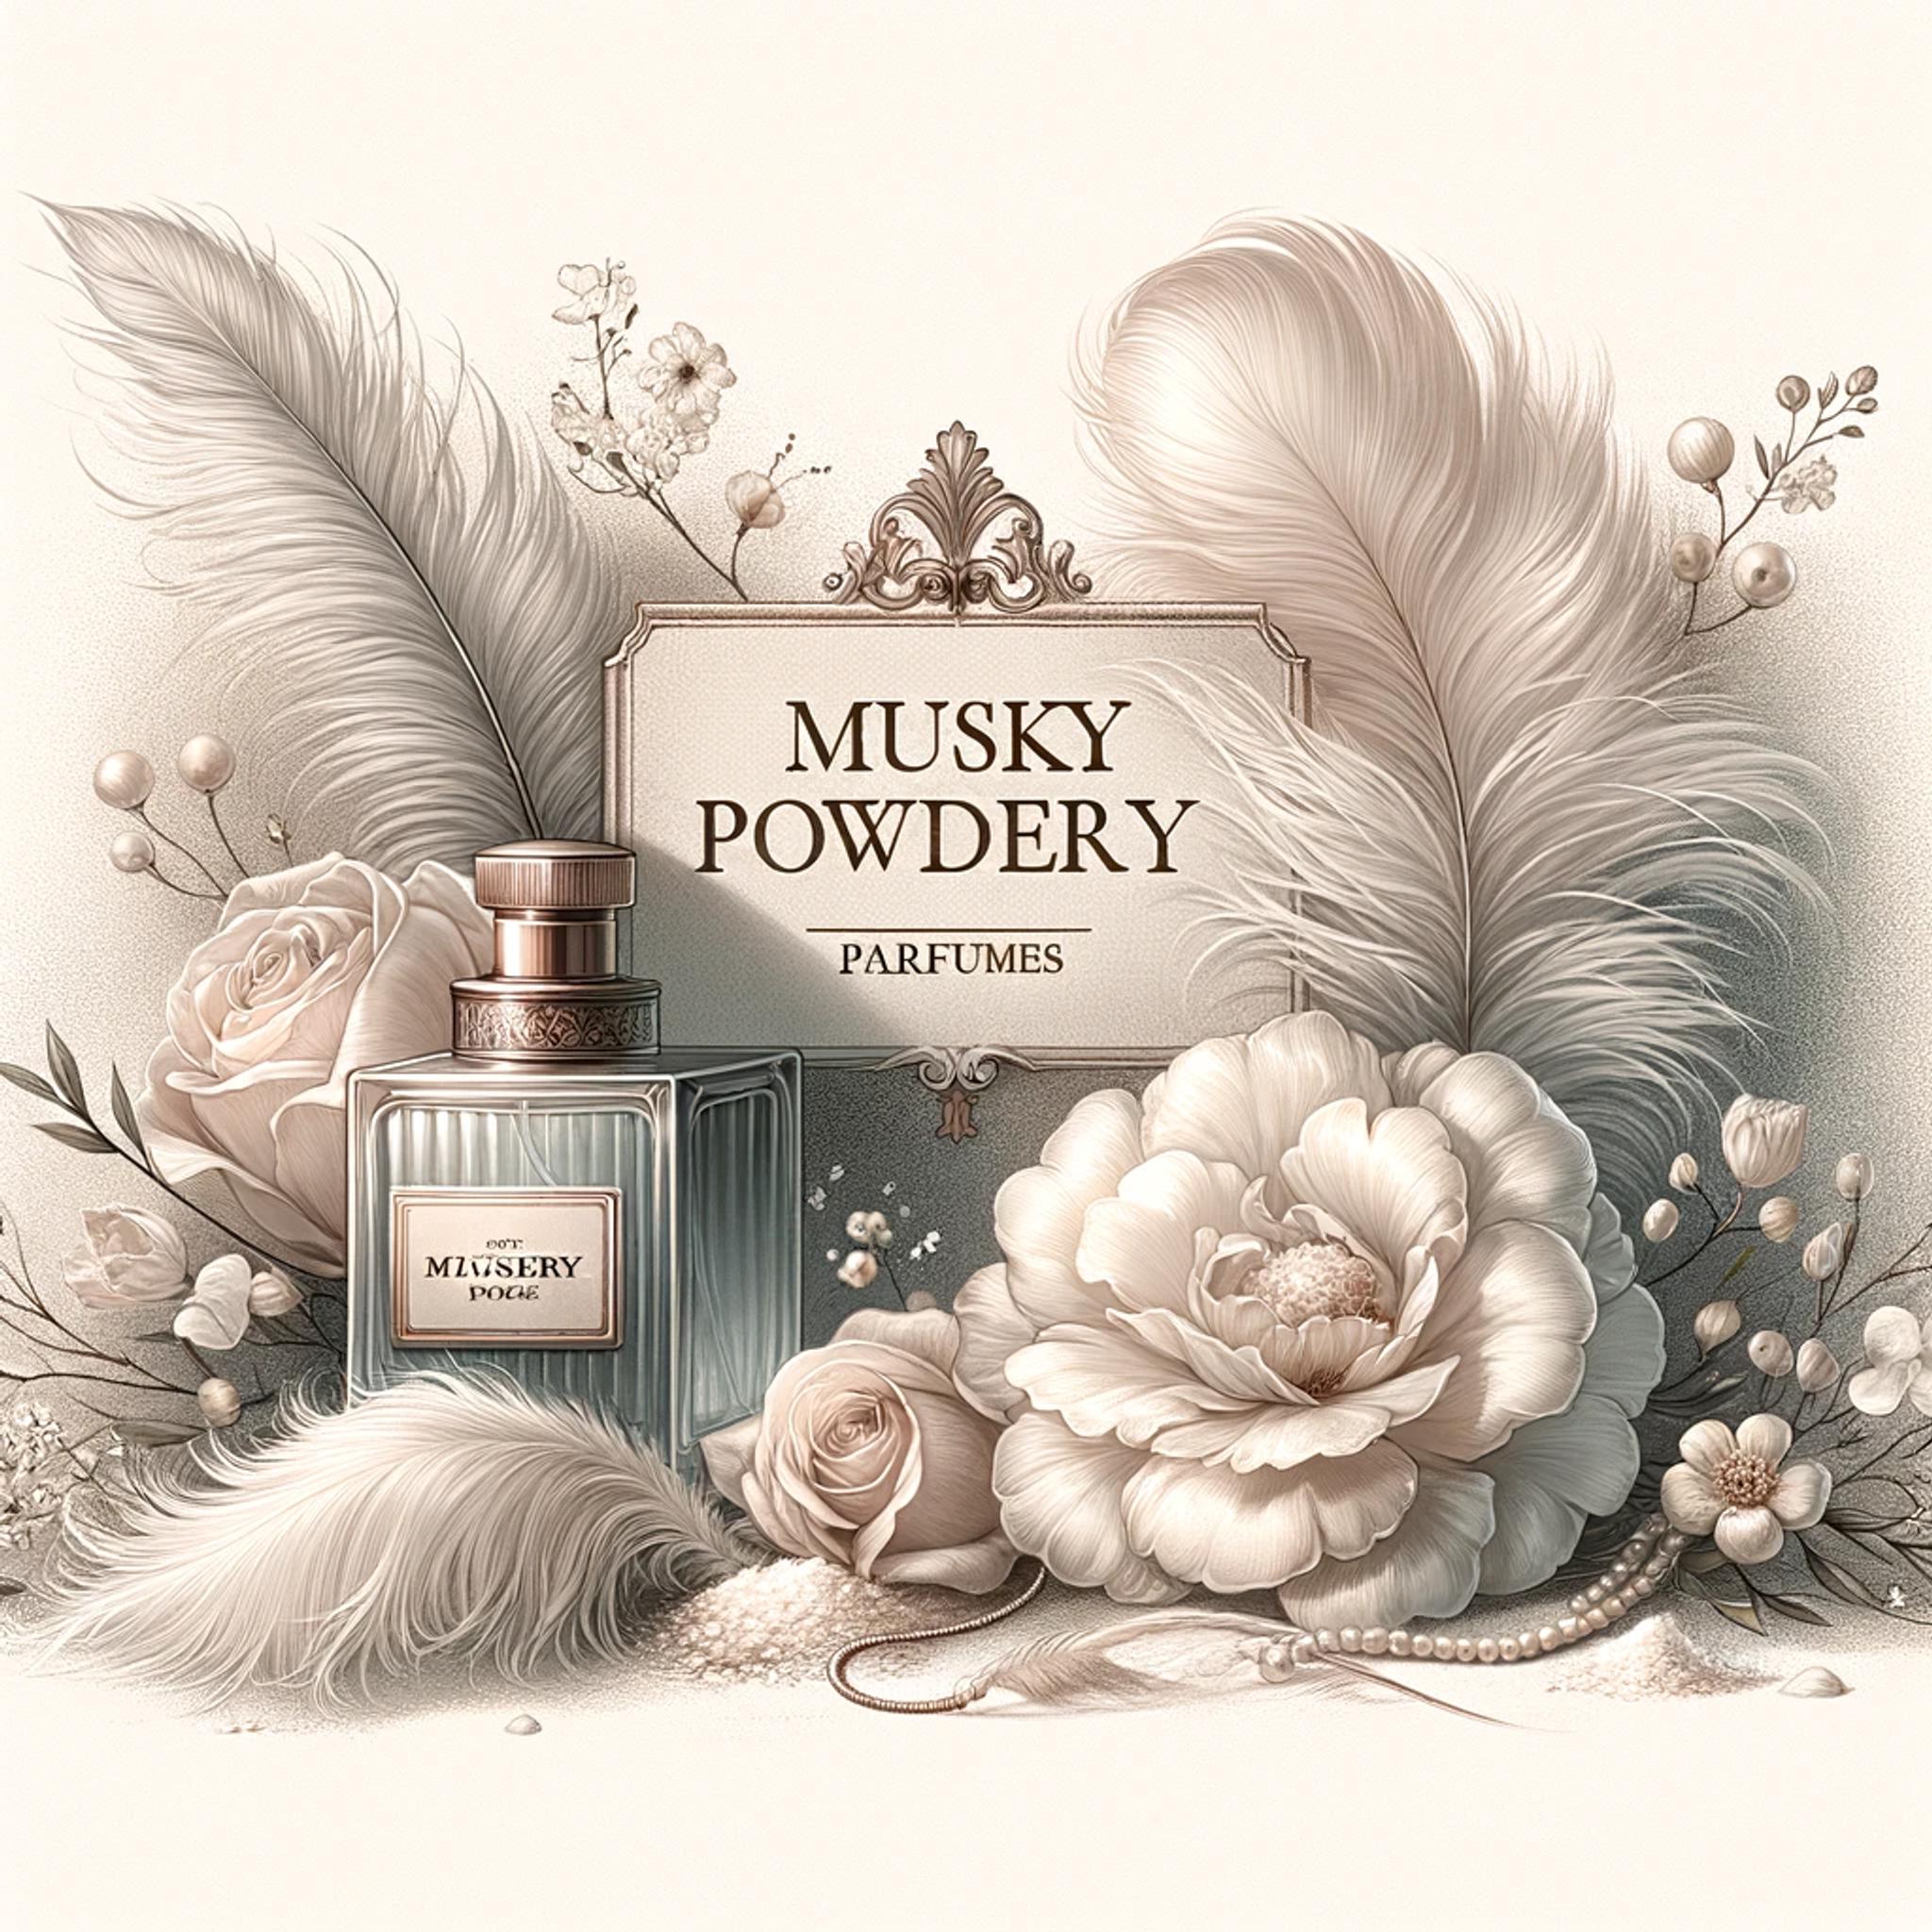 Musky powdery parfumes